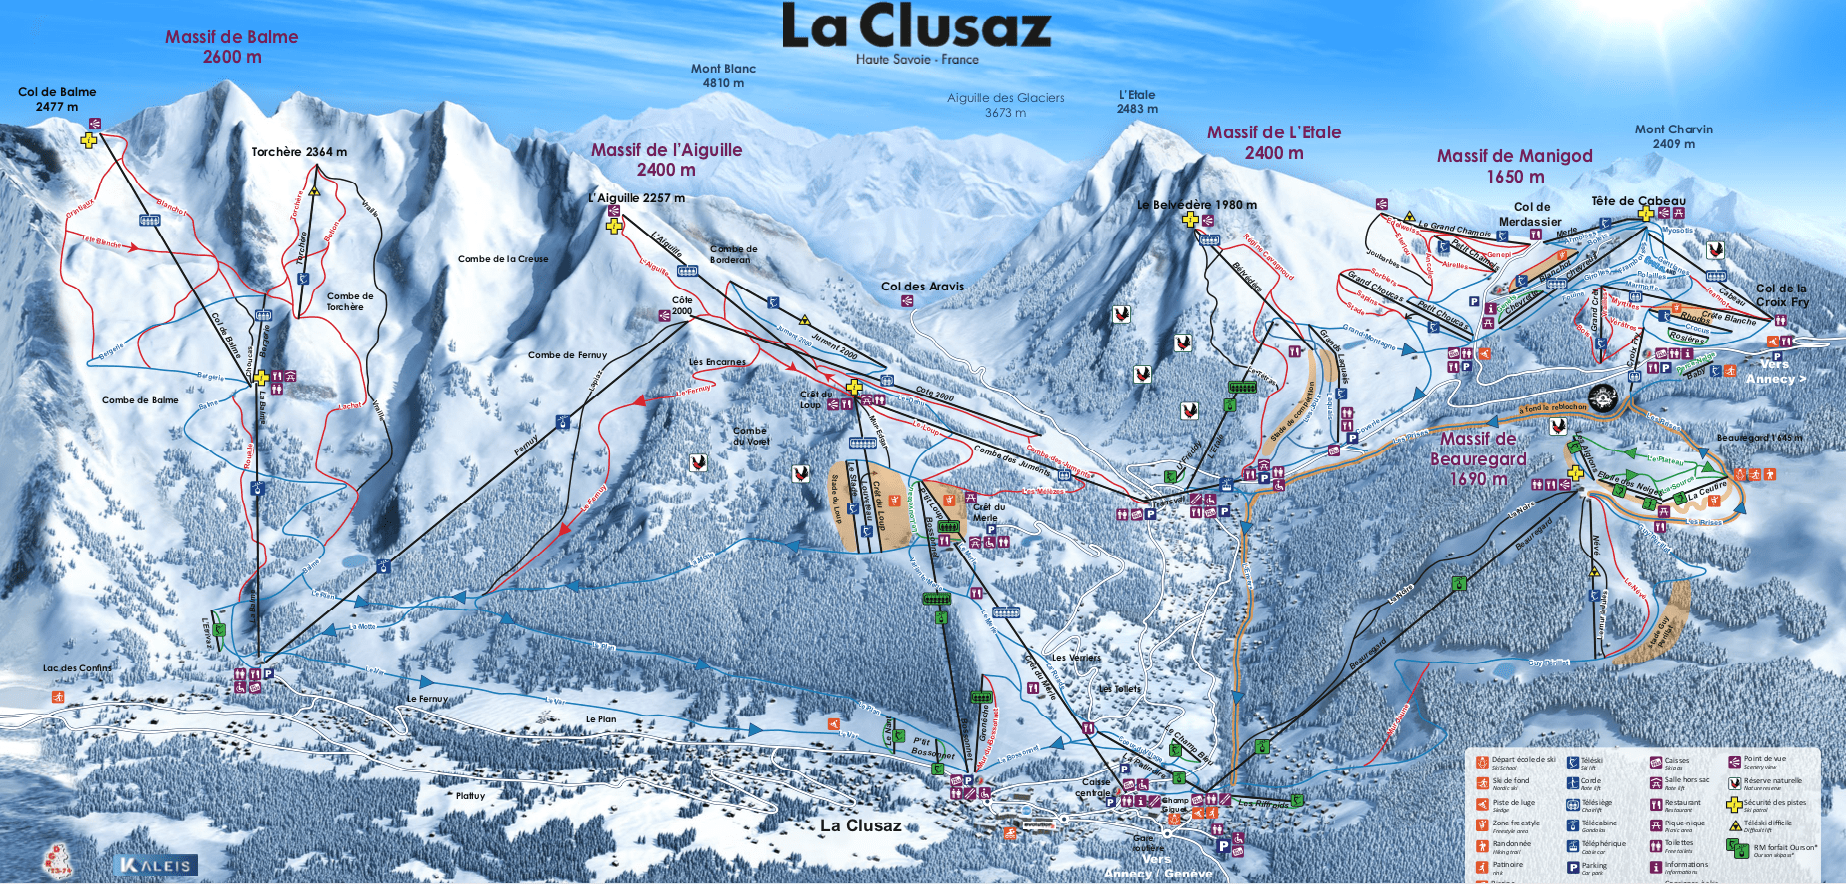 La Clusaz pist map Haute Savoie, France. 